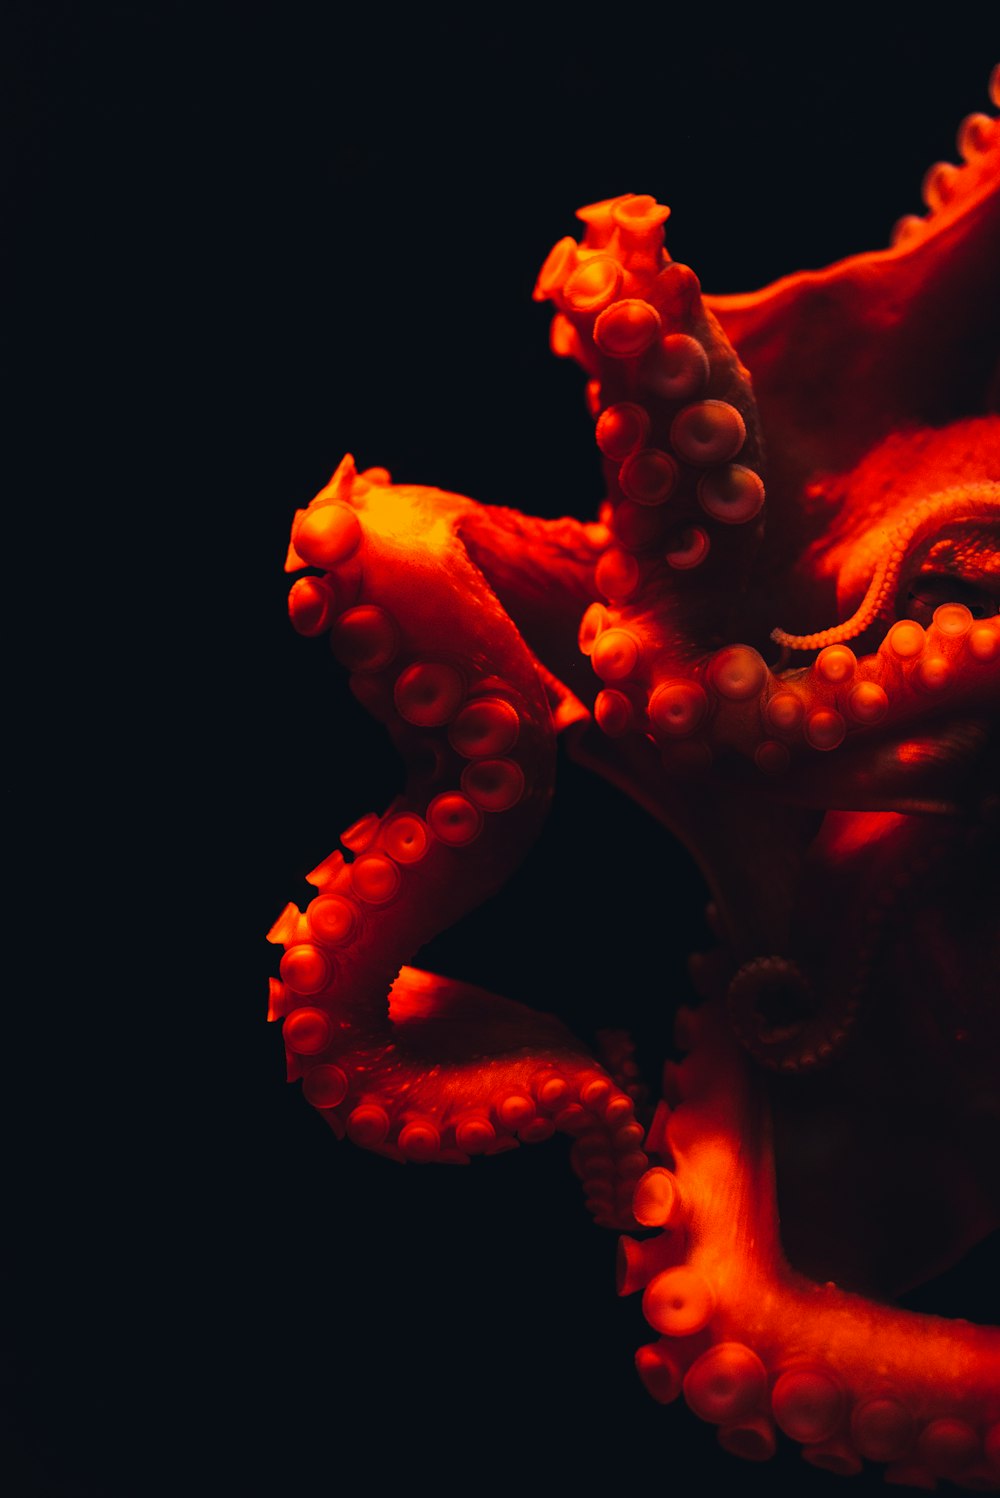 Flachfokusfotografie von Oktopussen